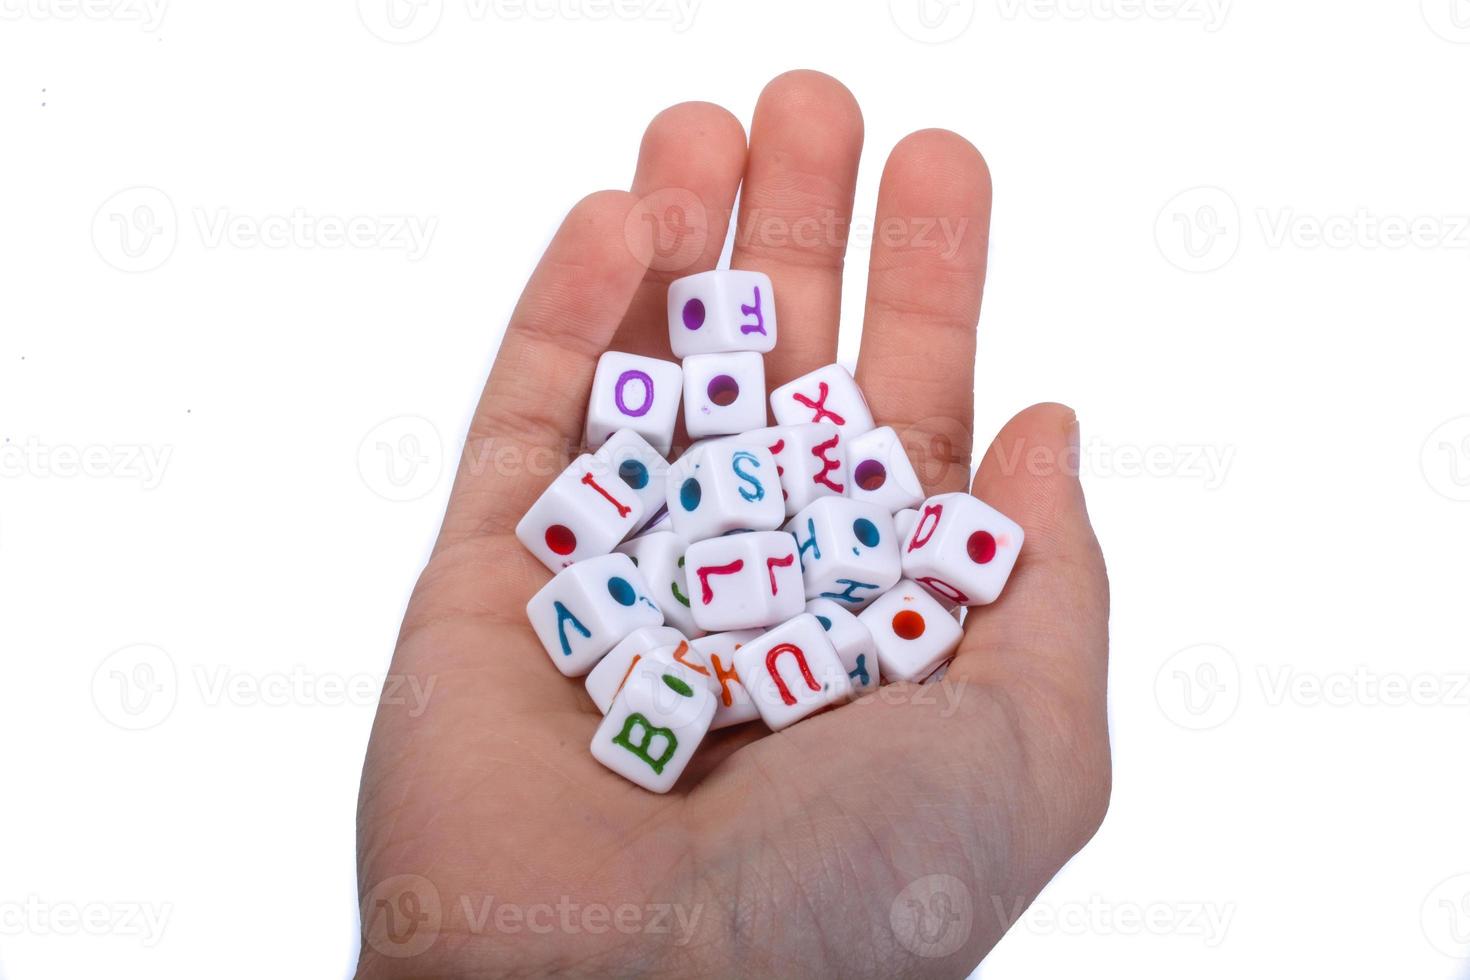 cubos de letras do alfabeto colorido na mão foto